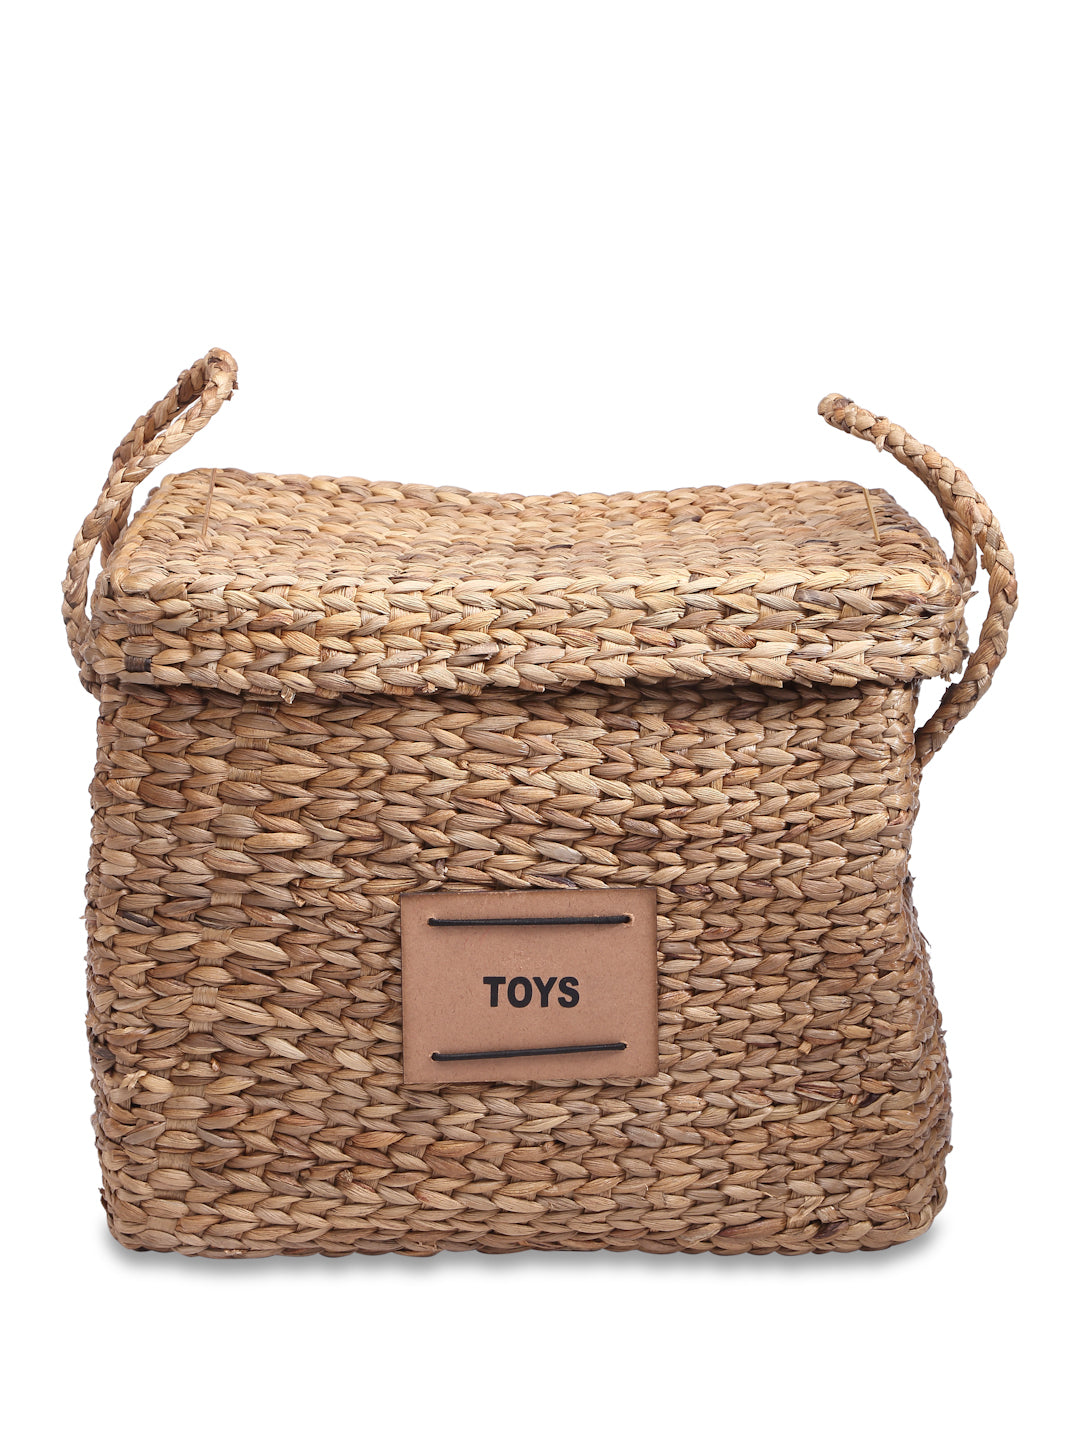 Toy Bamboo Cane Basket